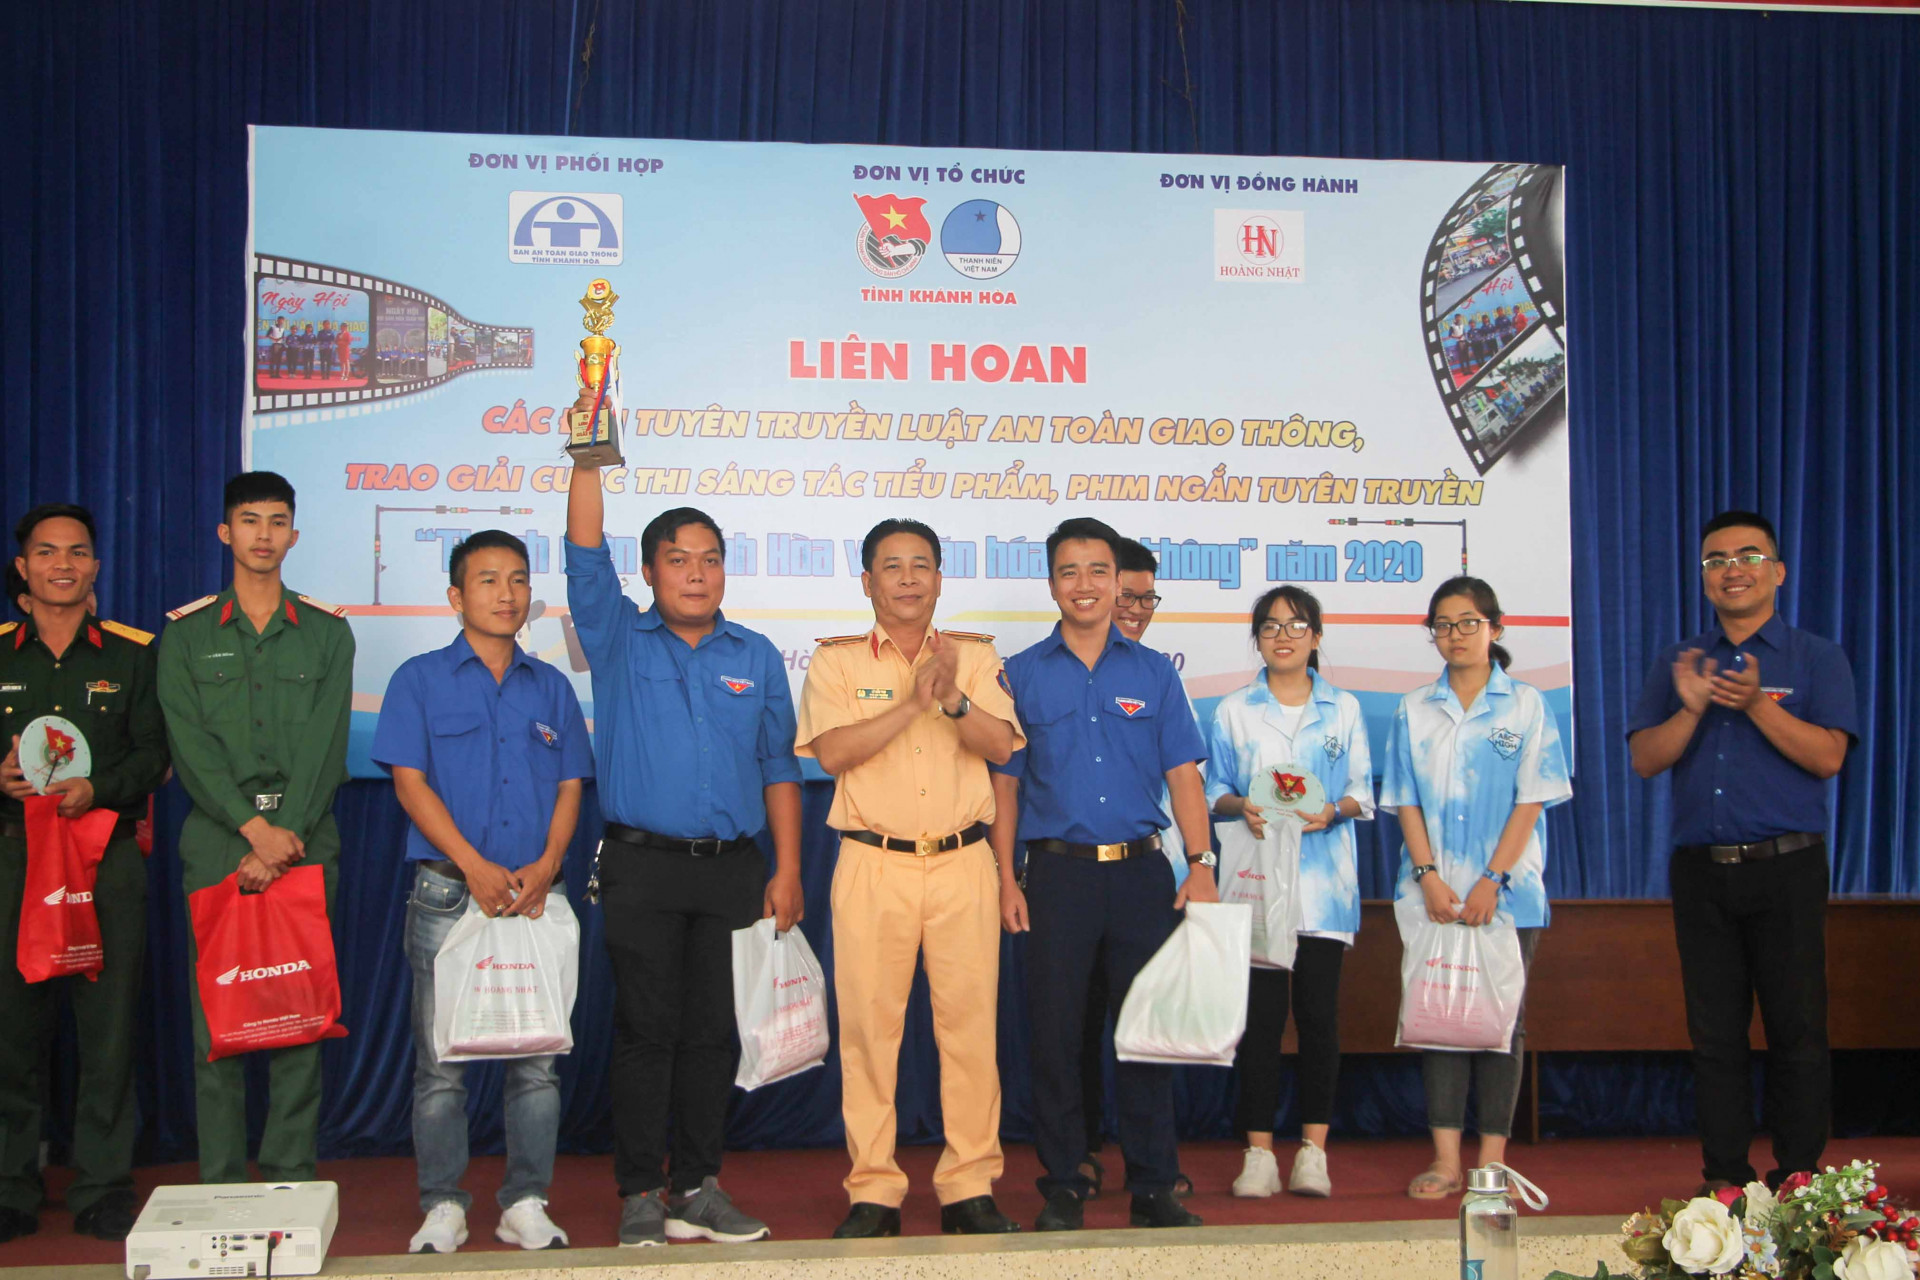 Ban tổ chức trao giải cho các đội tham gia Liên hoan các đội tuyên truyền luật an toàn giao thông